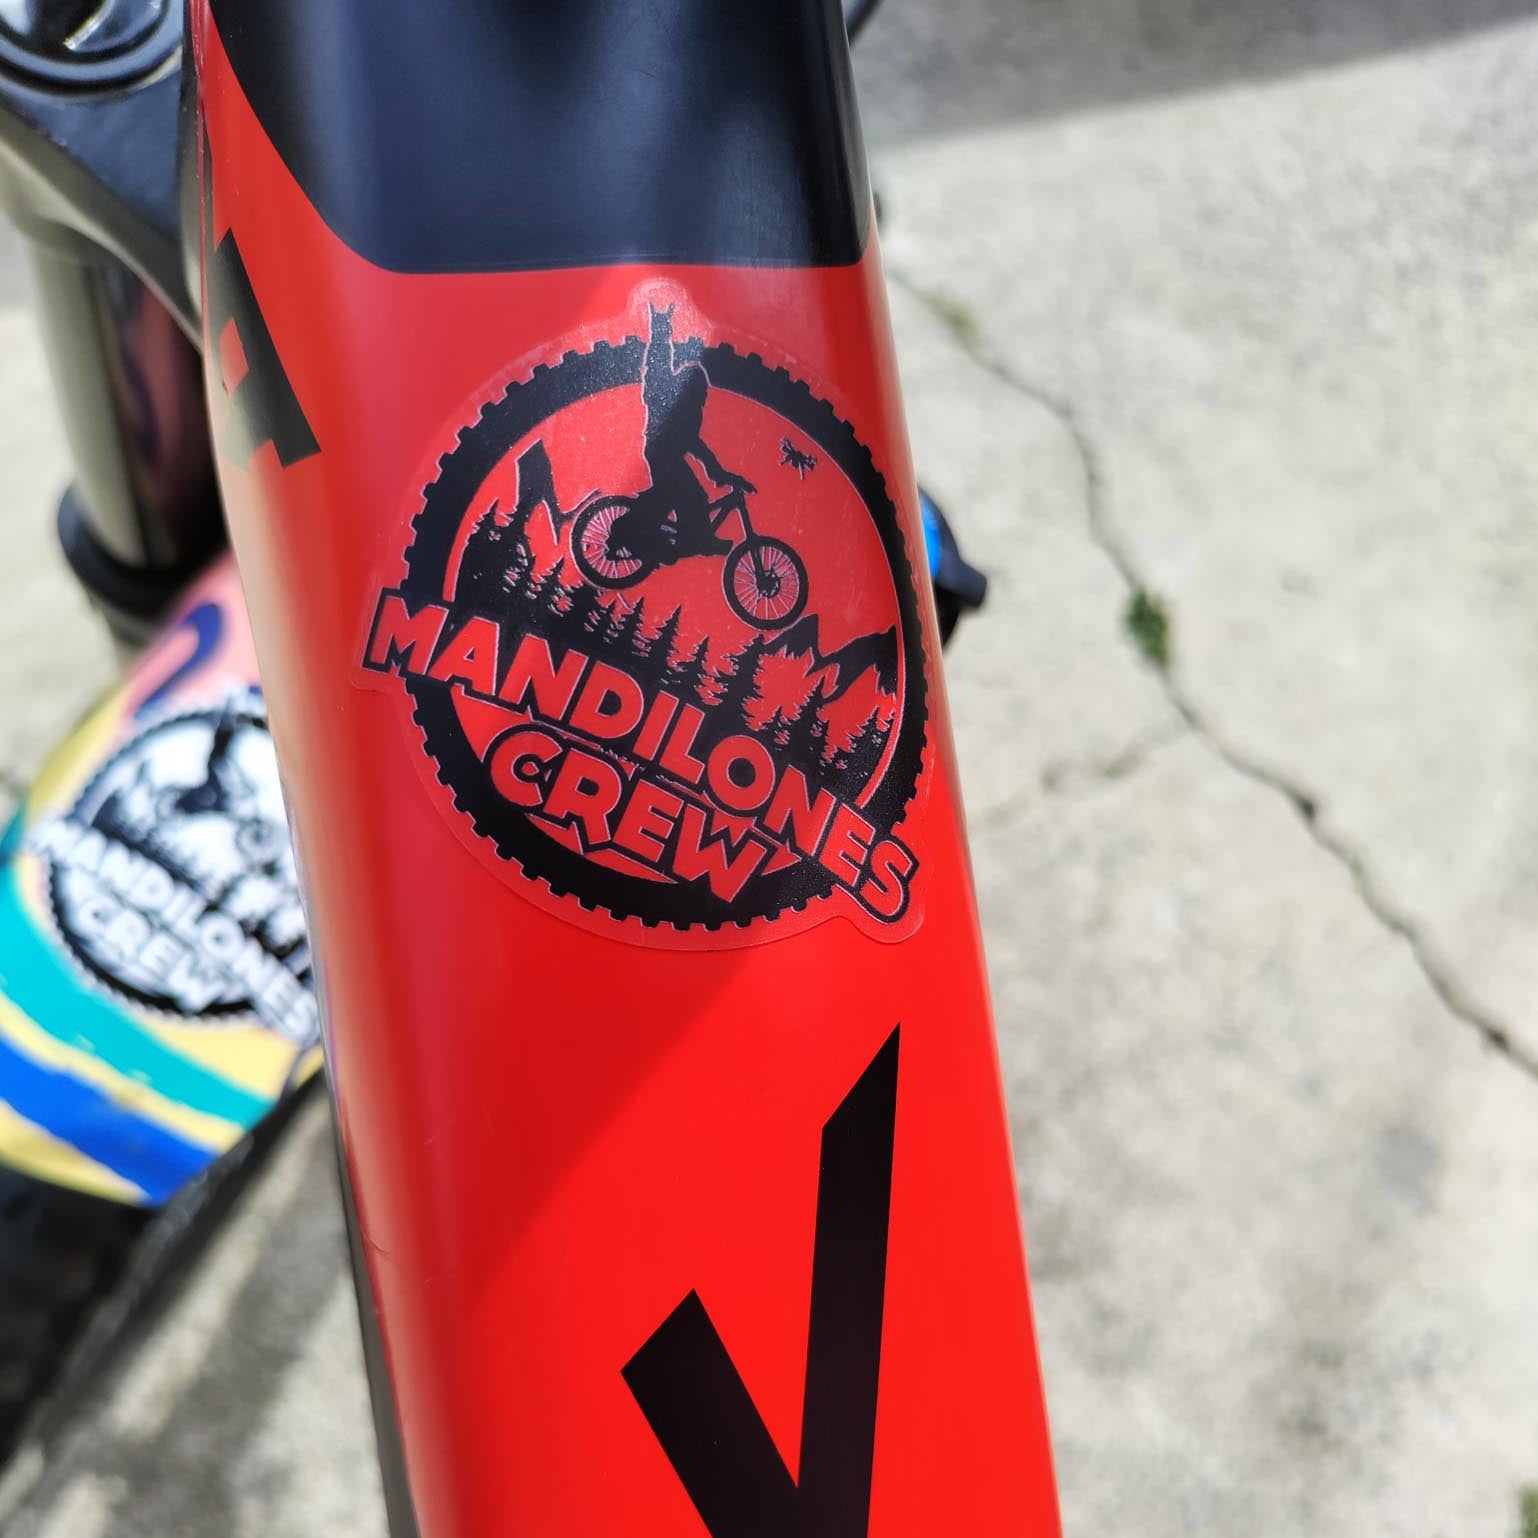 Autocollant pour vélo / Sticker for bike